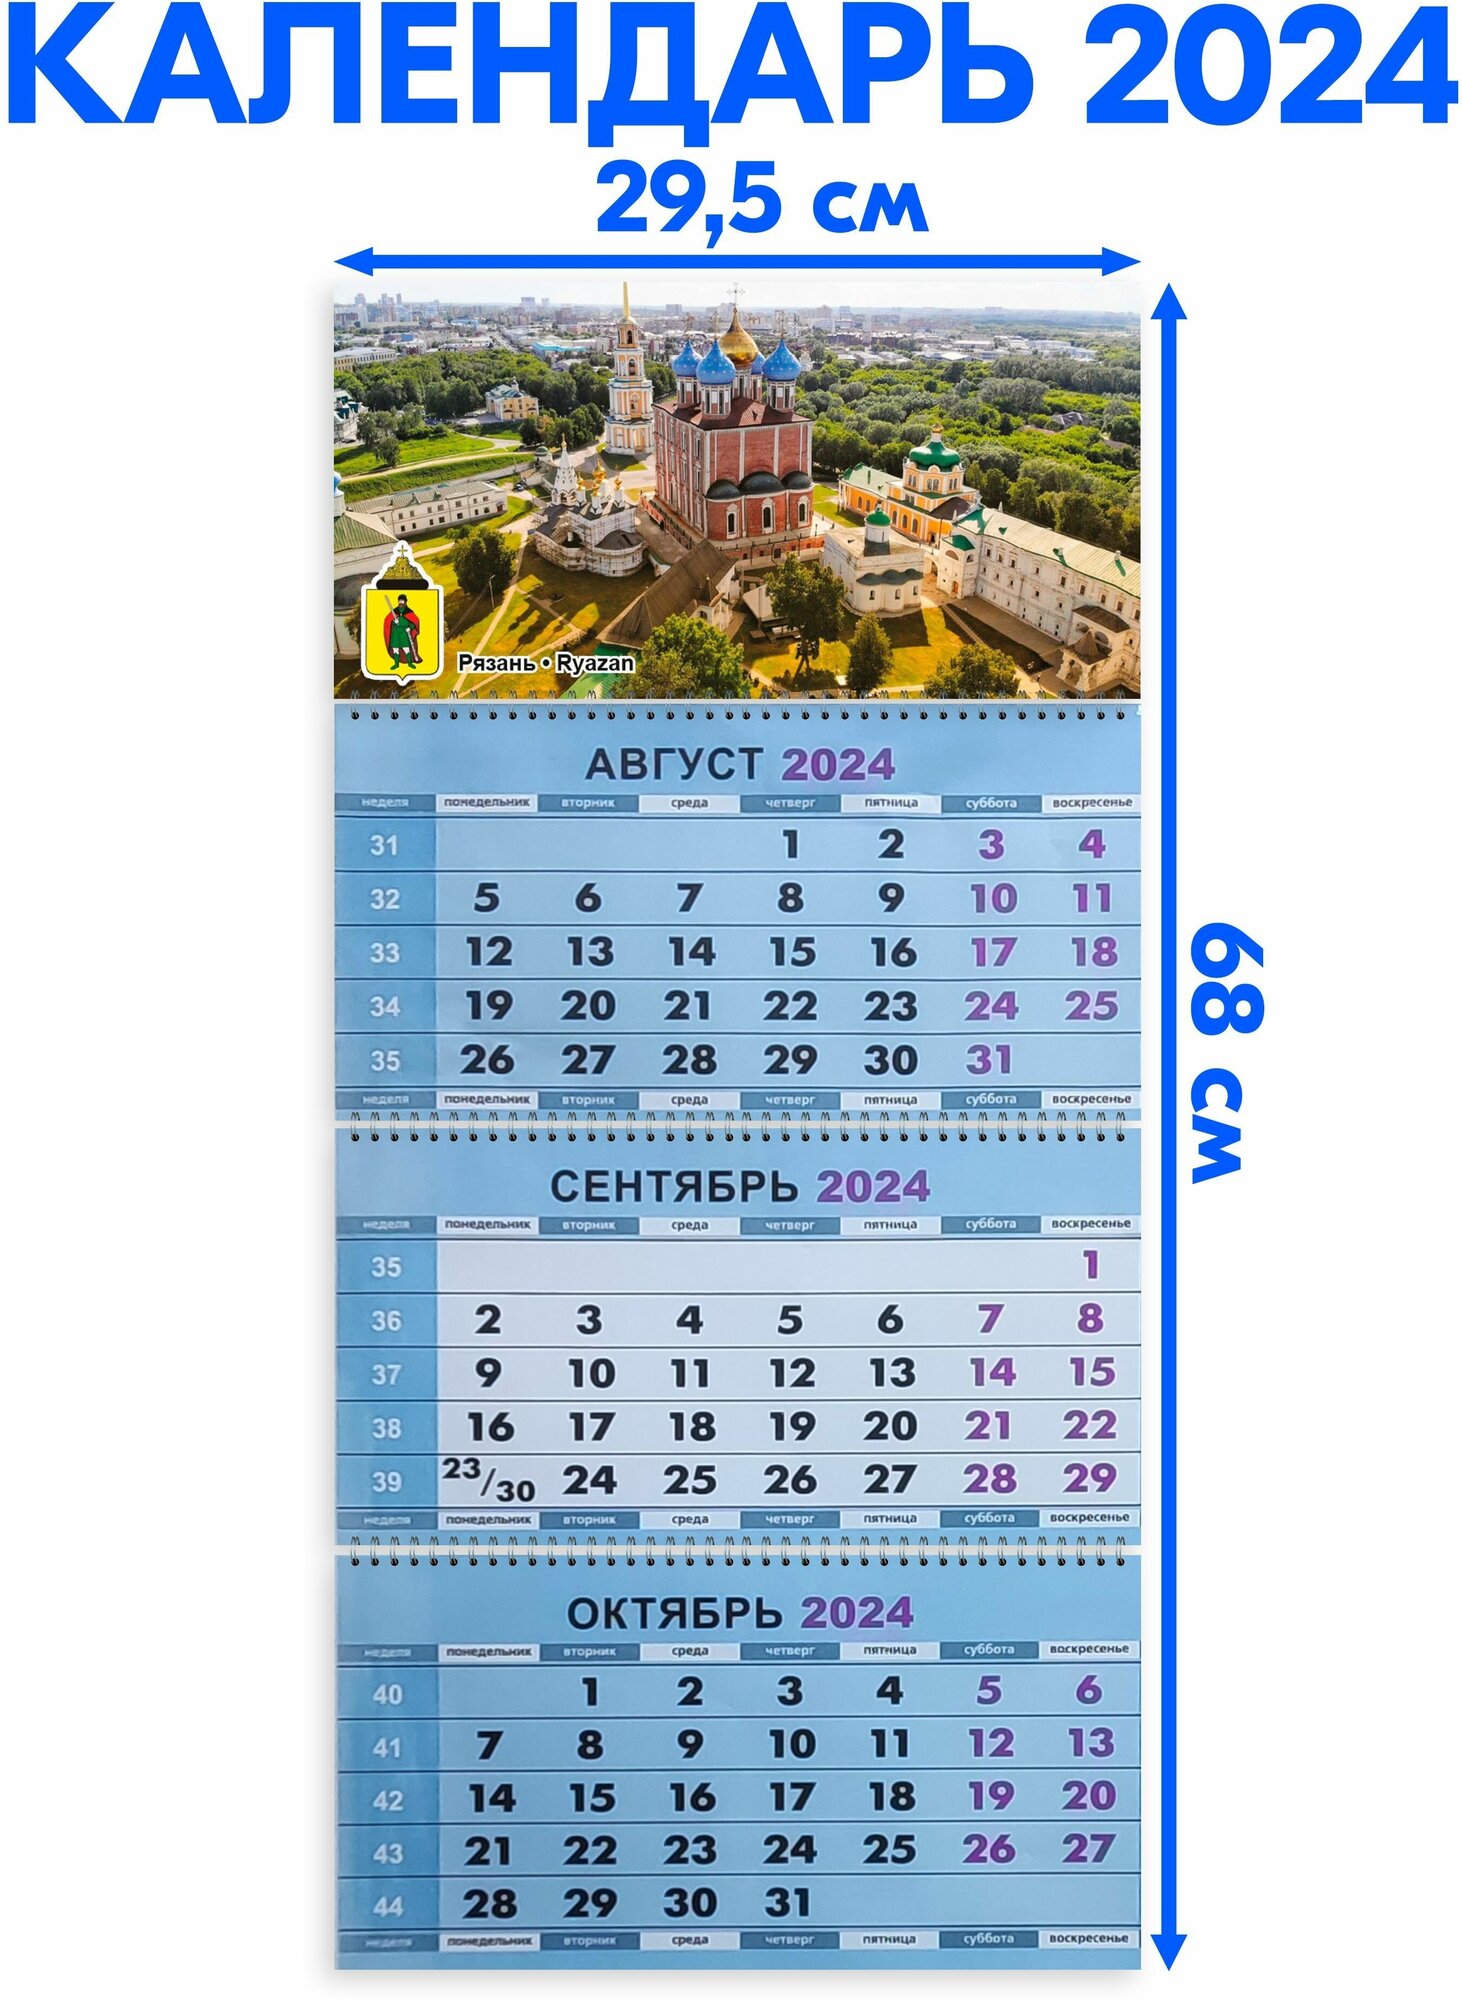 Календарь настенный 2024 трехблочный квартальный Рязань. Длина календаря в развёрнутом виде - 68 см, ширина - 29,5 см.